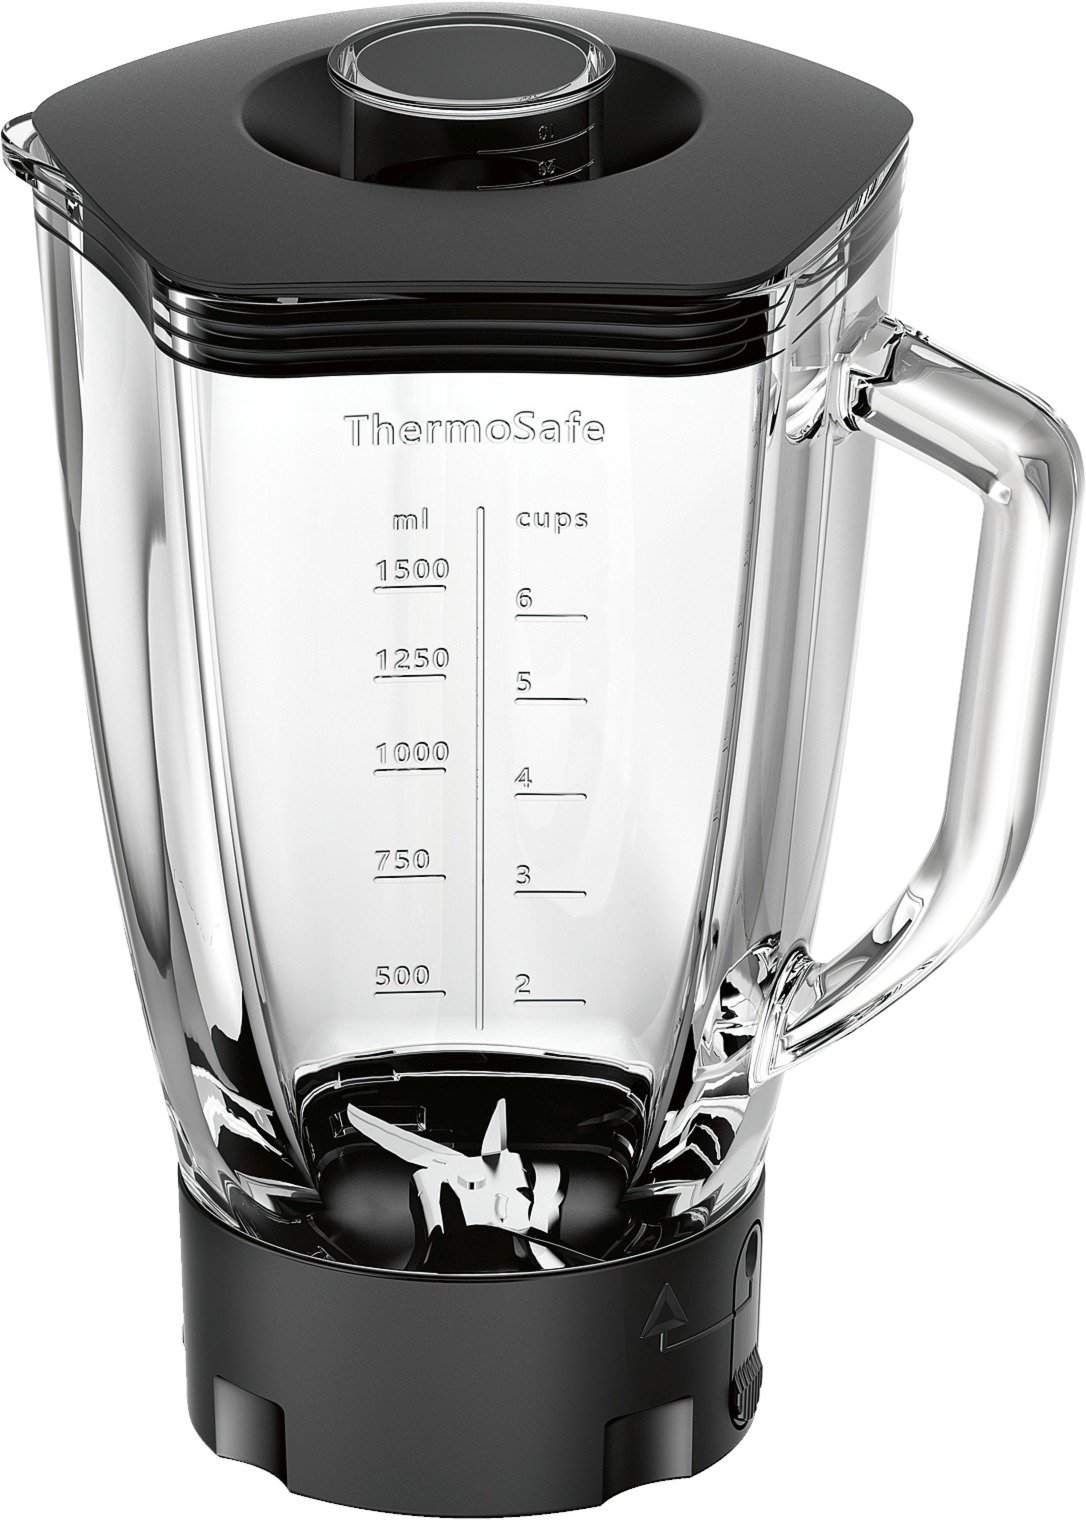 Bosch Mixer-Aufsatz MUZ9MX1, ThermoSafe-Glas, 2,3 L, perfekt für Crushed-Ice und Cocktails, spülmaschinengeeignet, passend für OptiMUM